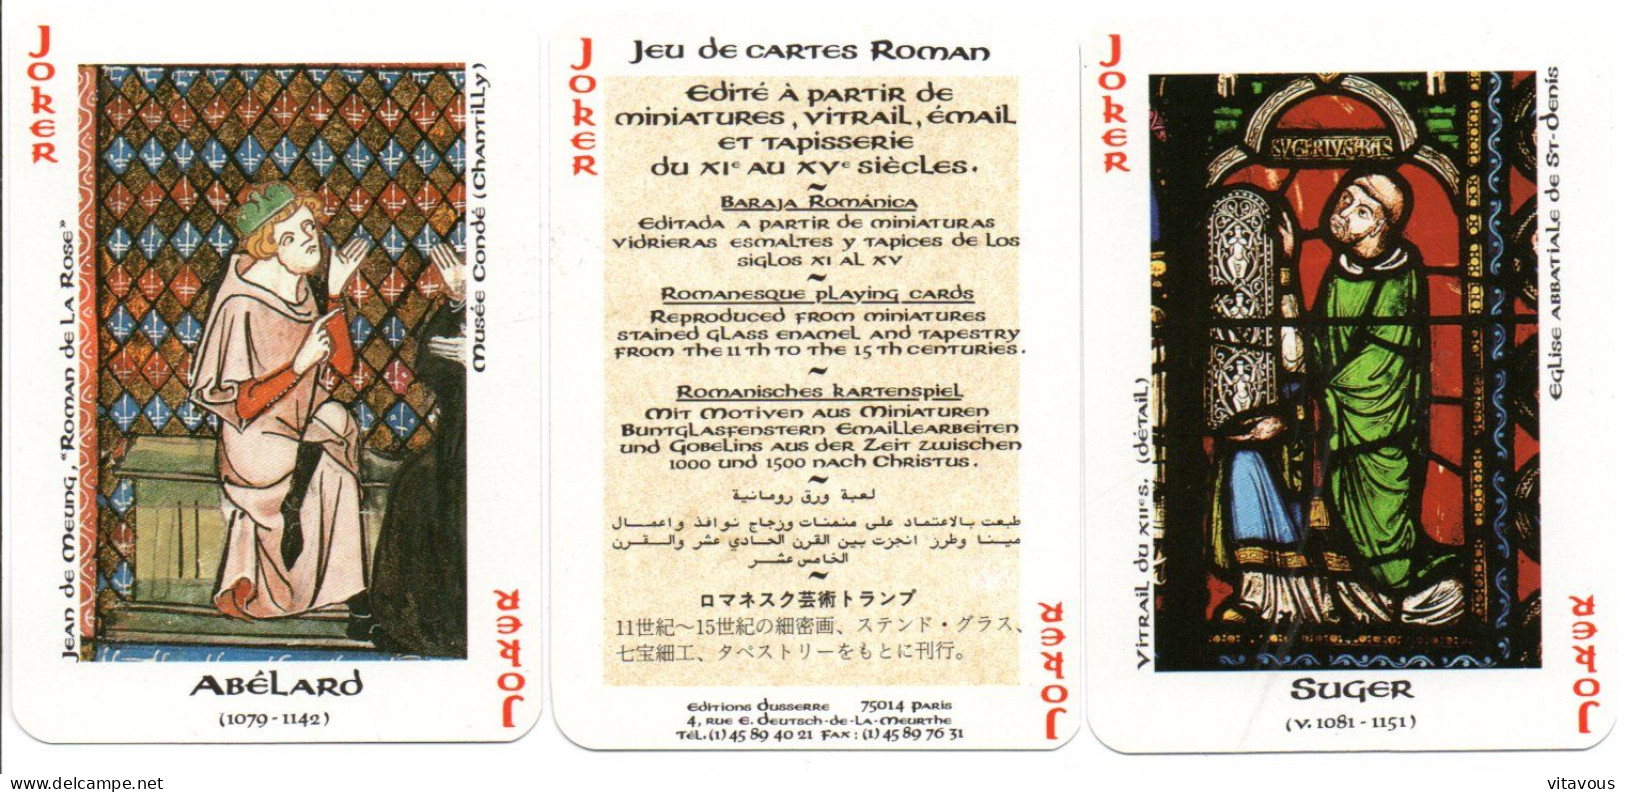 Jeu De 54 Cartes ROMAND Playing Cards - 54 Cartes